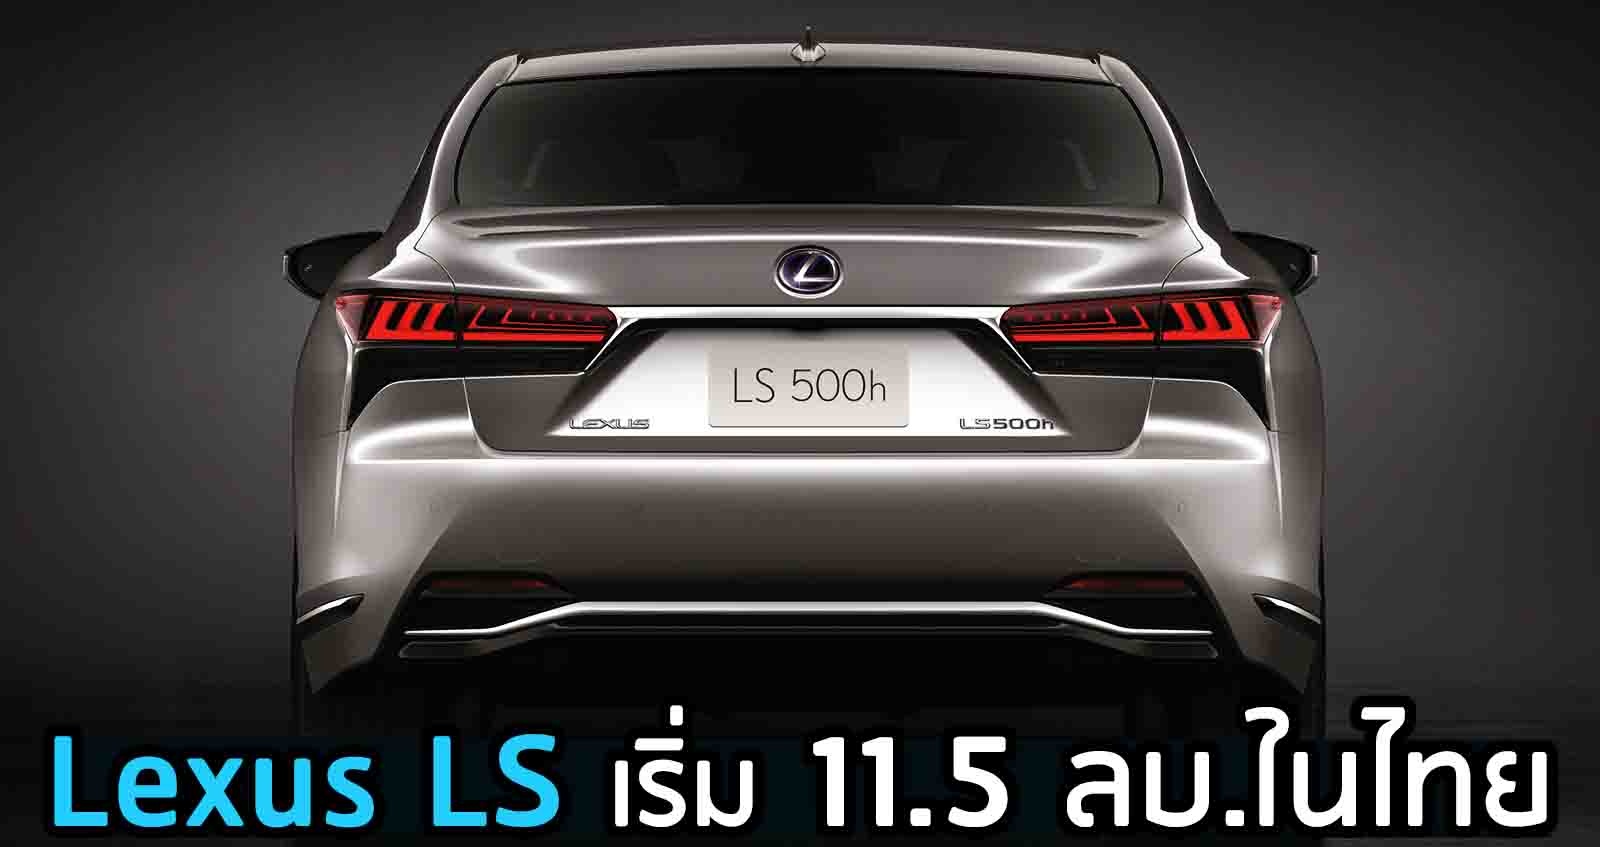 เปิดตัว The New Lexus LS ราคา 11.5 ลบ. ใหม่